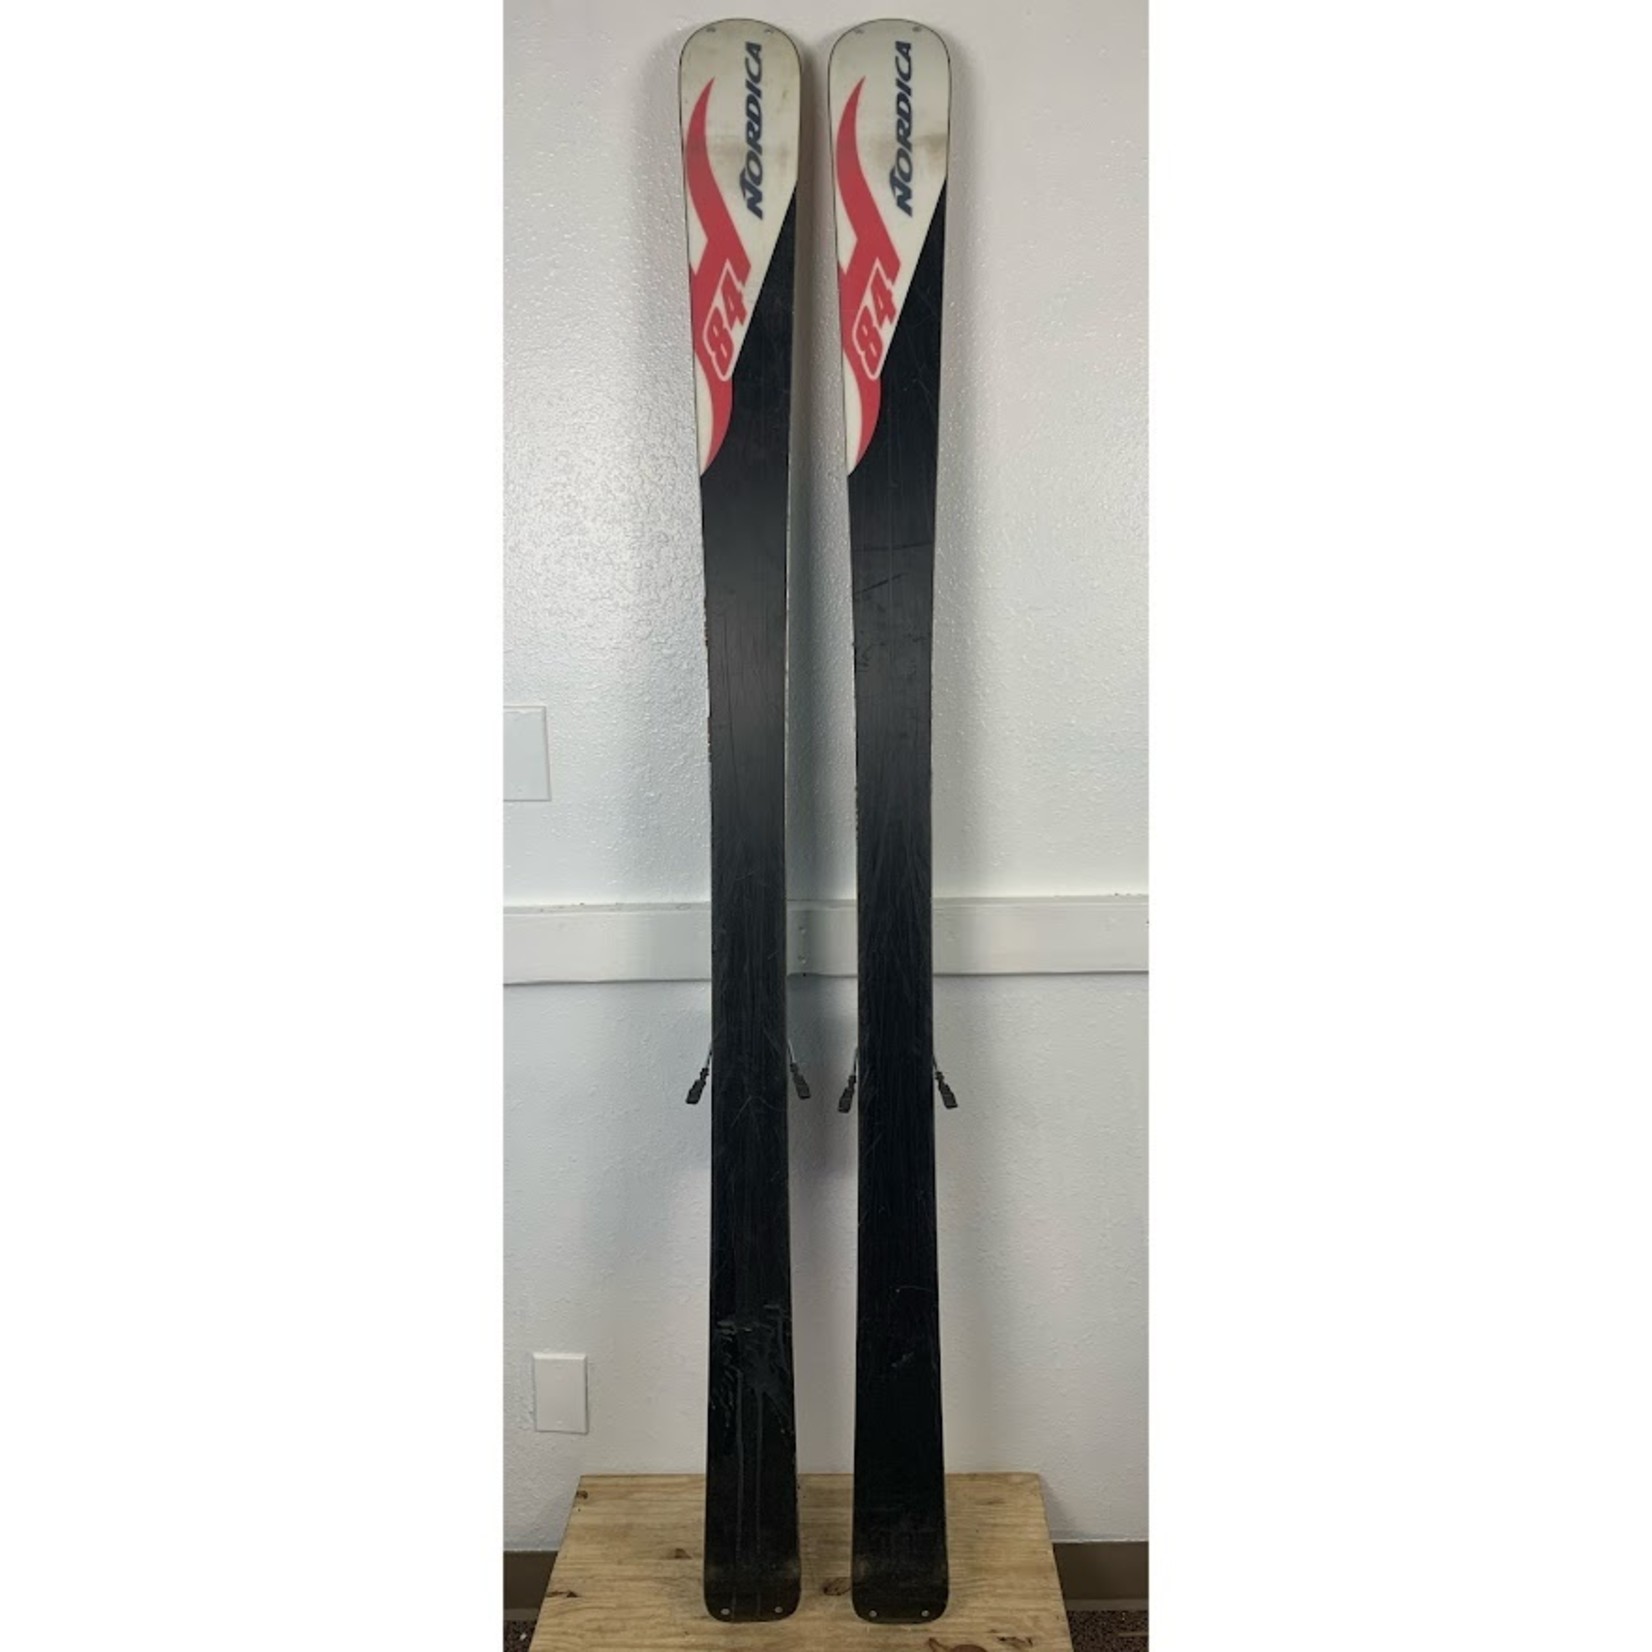 Nordica Nordica Skis (178 cm)